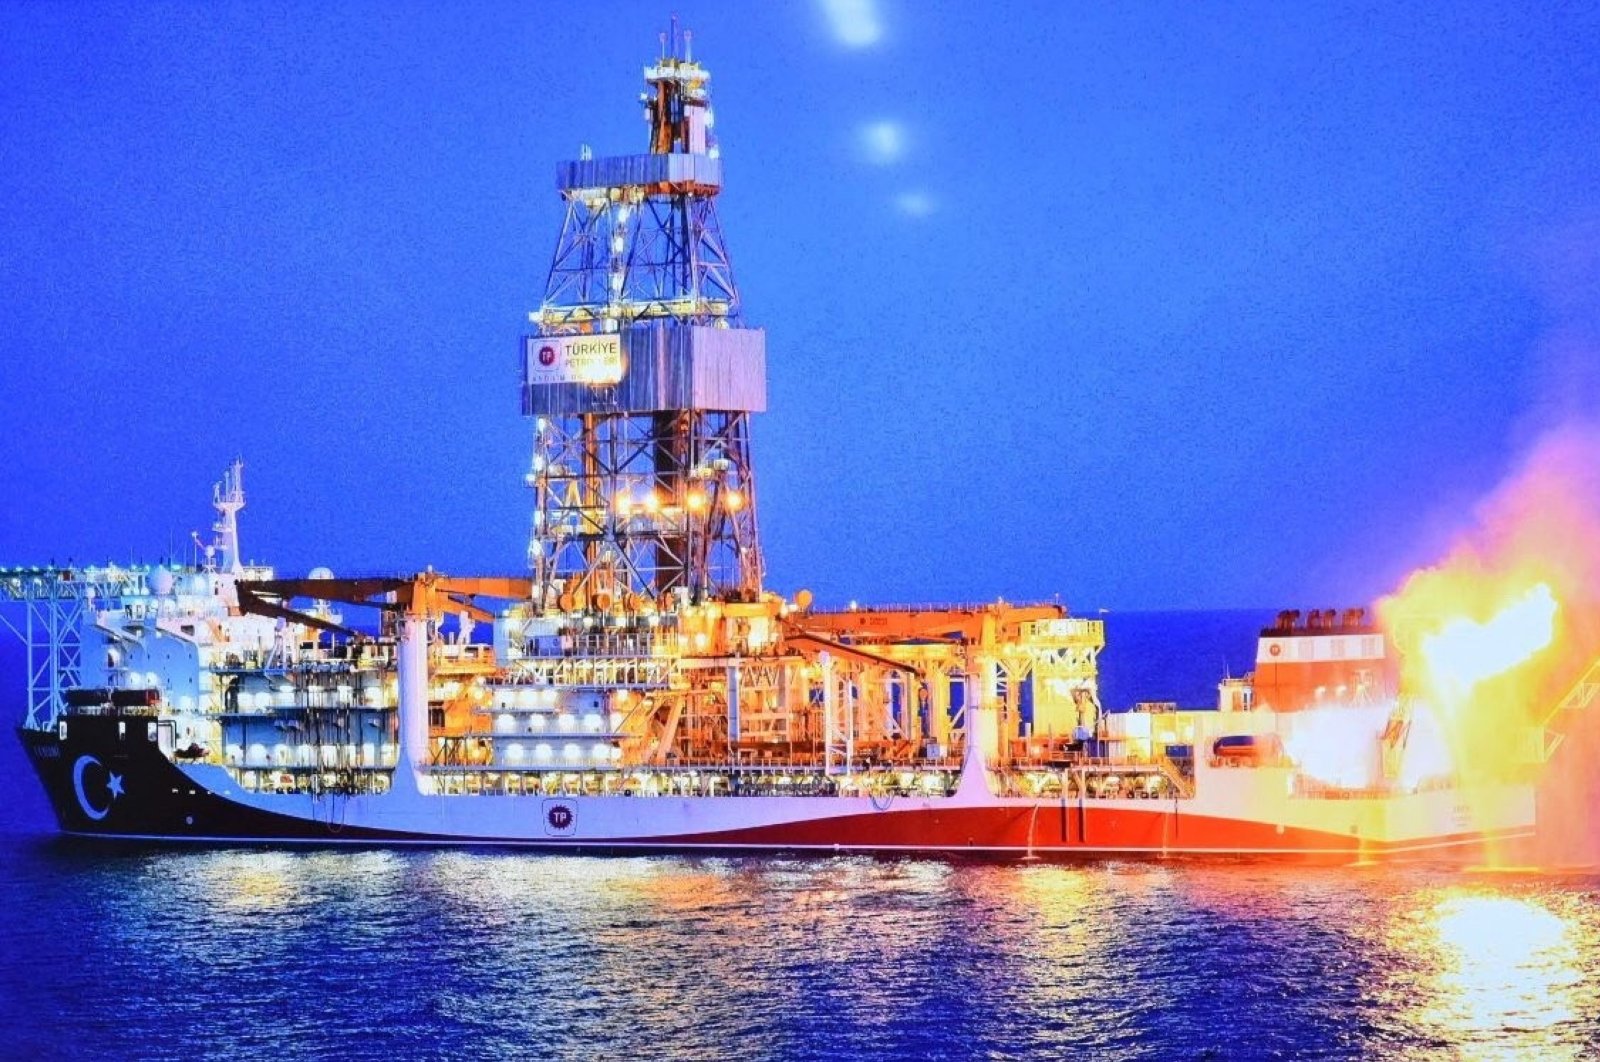 Turki mengakuisisi kapal bor ke-4 untuk eksplorasi hidrokarbon: Erdogan